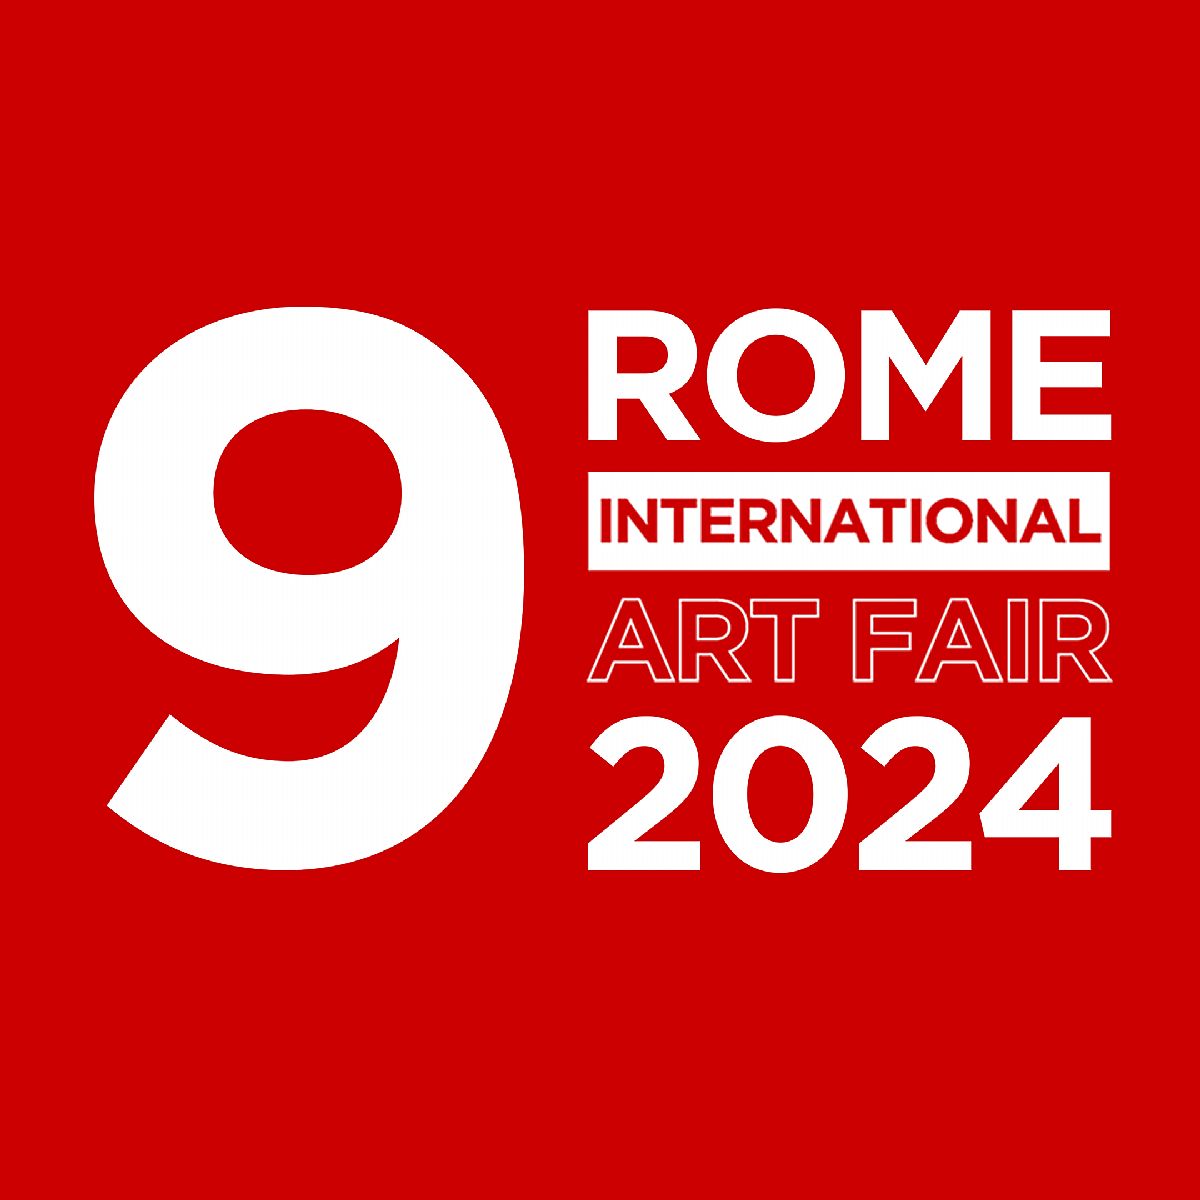 ROME INTERNATIONAL ART FAIR 2024-9TH EDITION